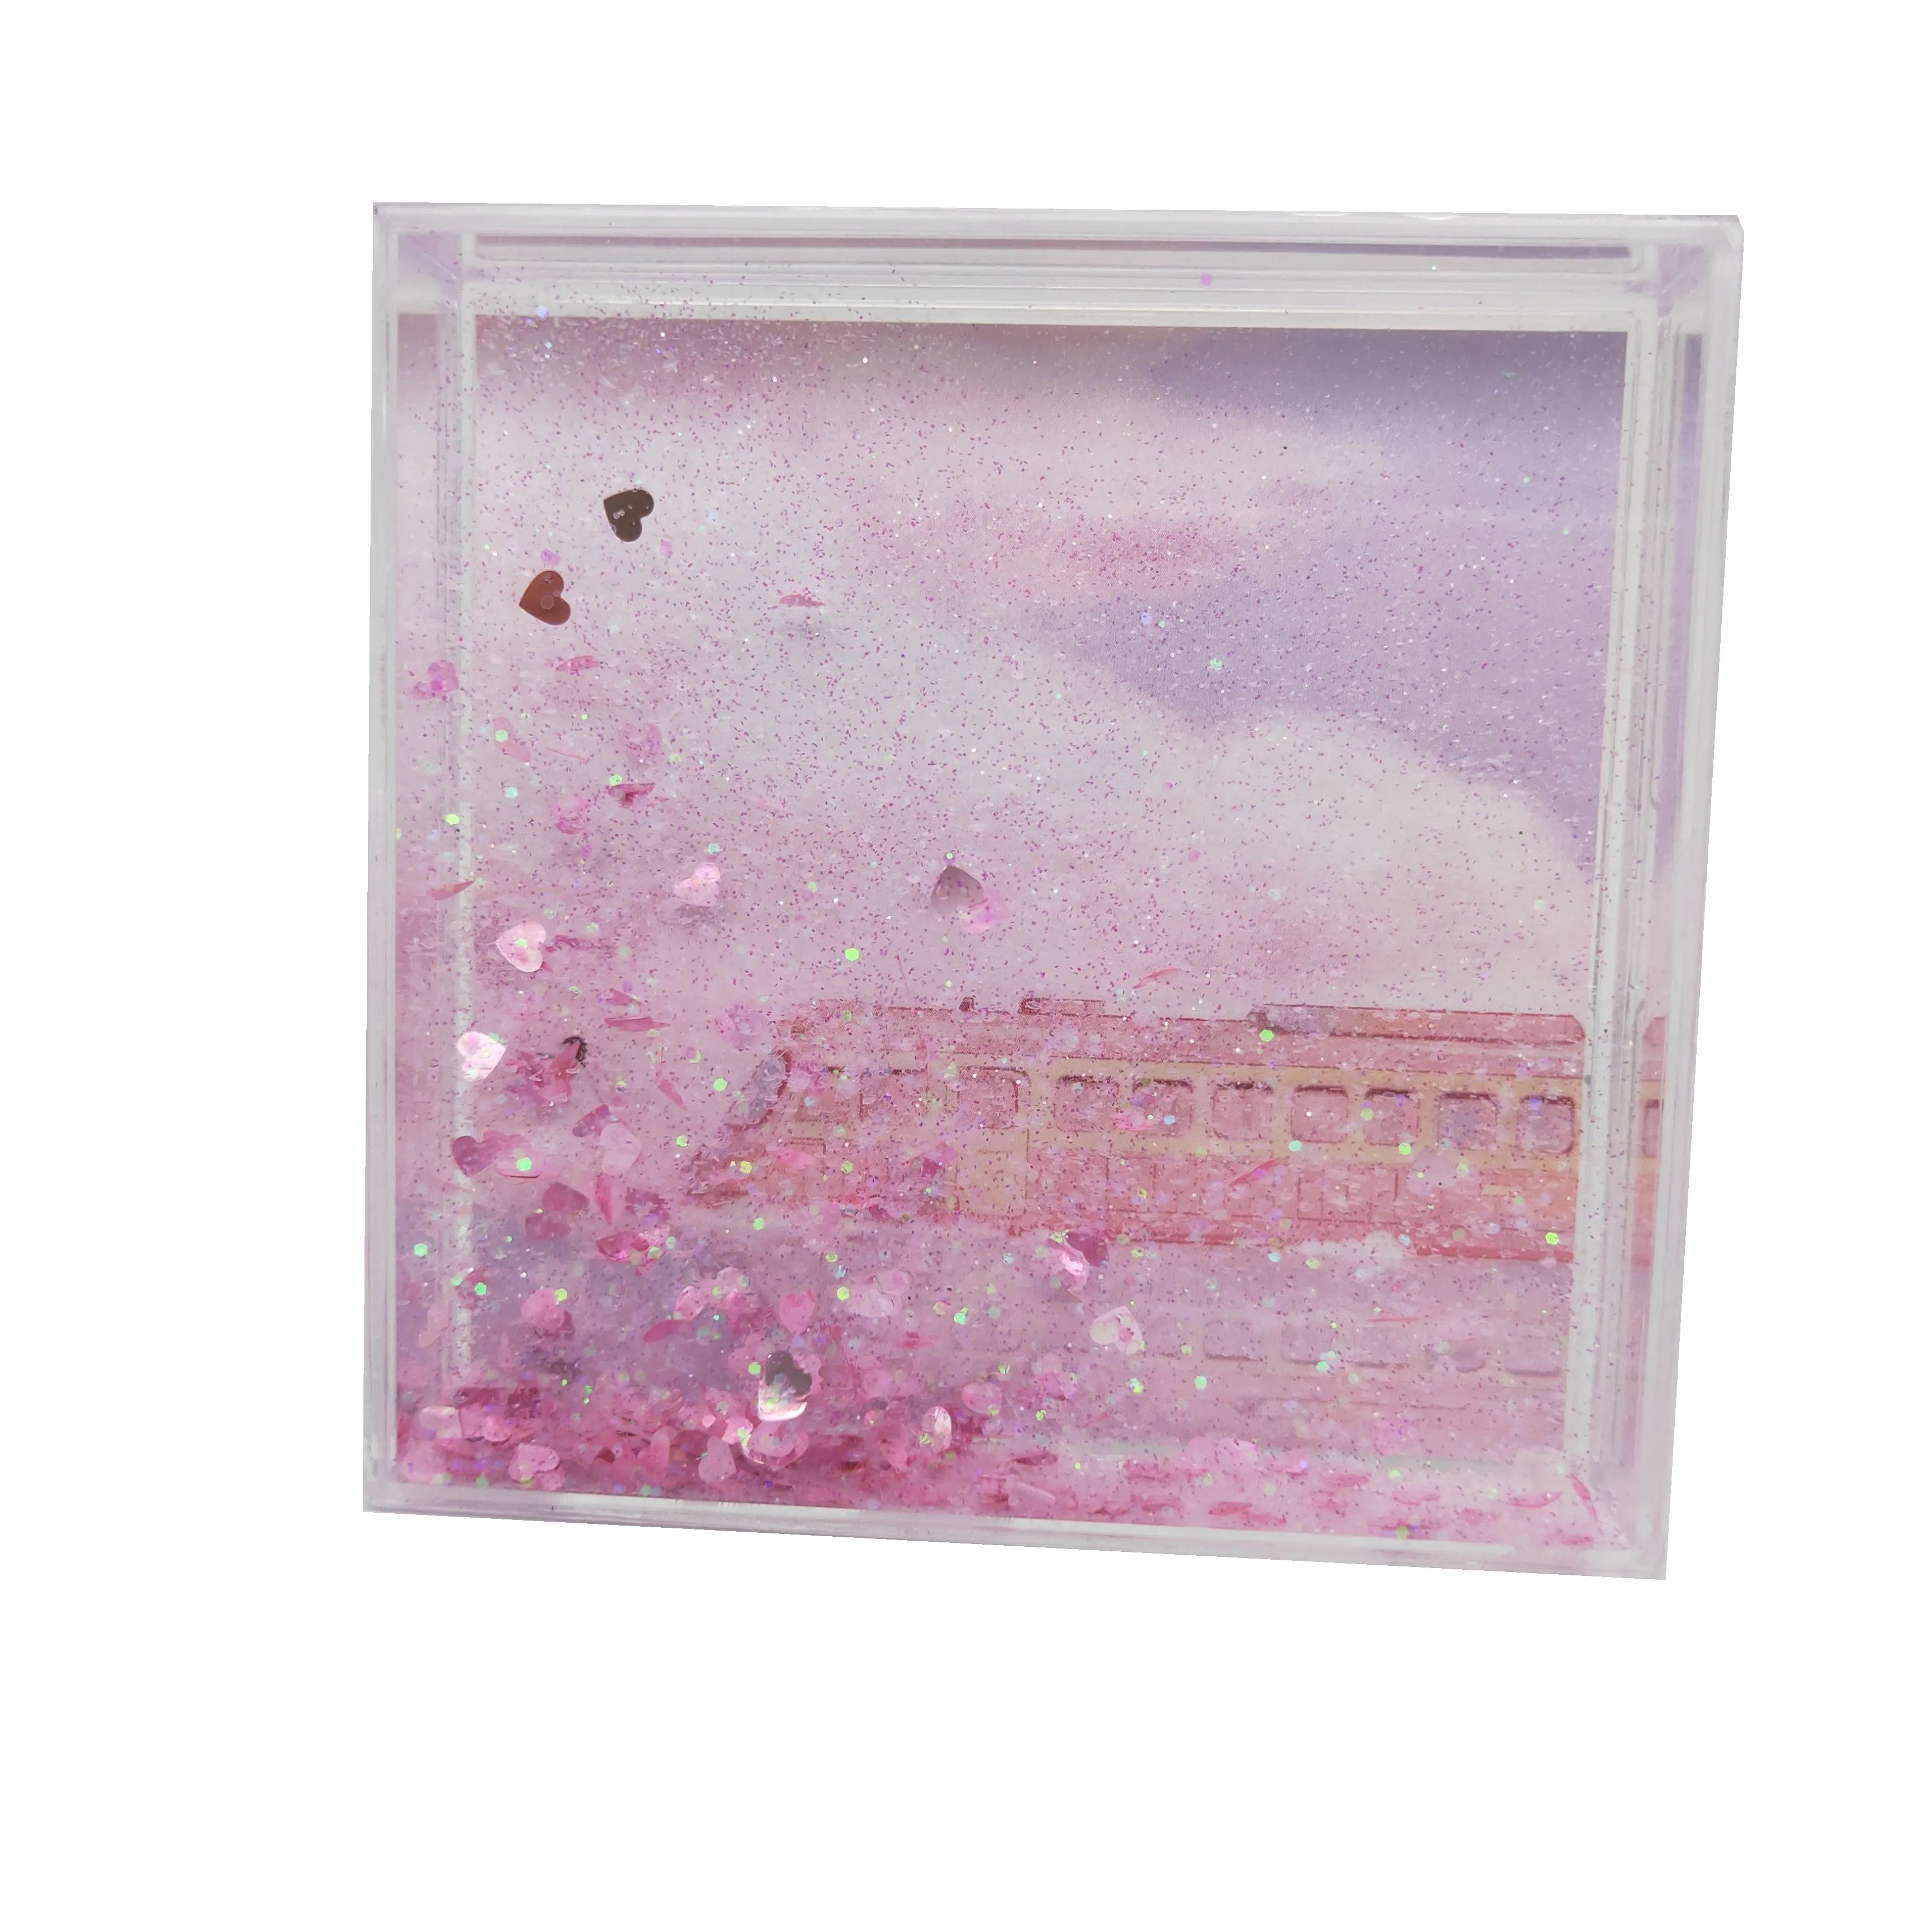 Marco DE FOTOS acrílico Rectangular de niña rosa de alta calidad 4x4 líquido brillante cuadrado para decoración del hogar